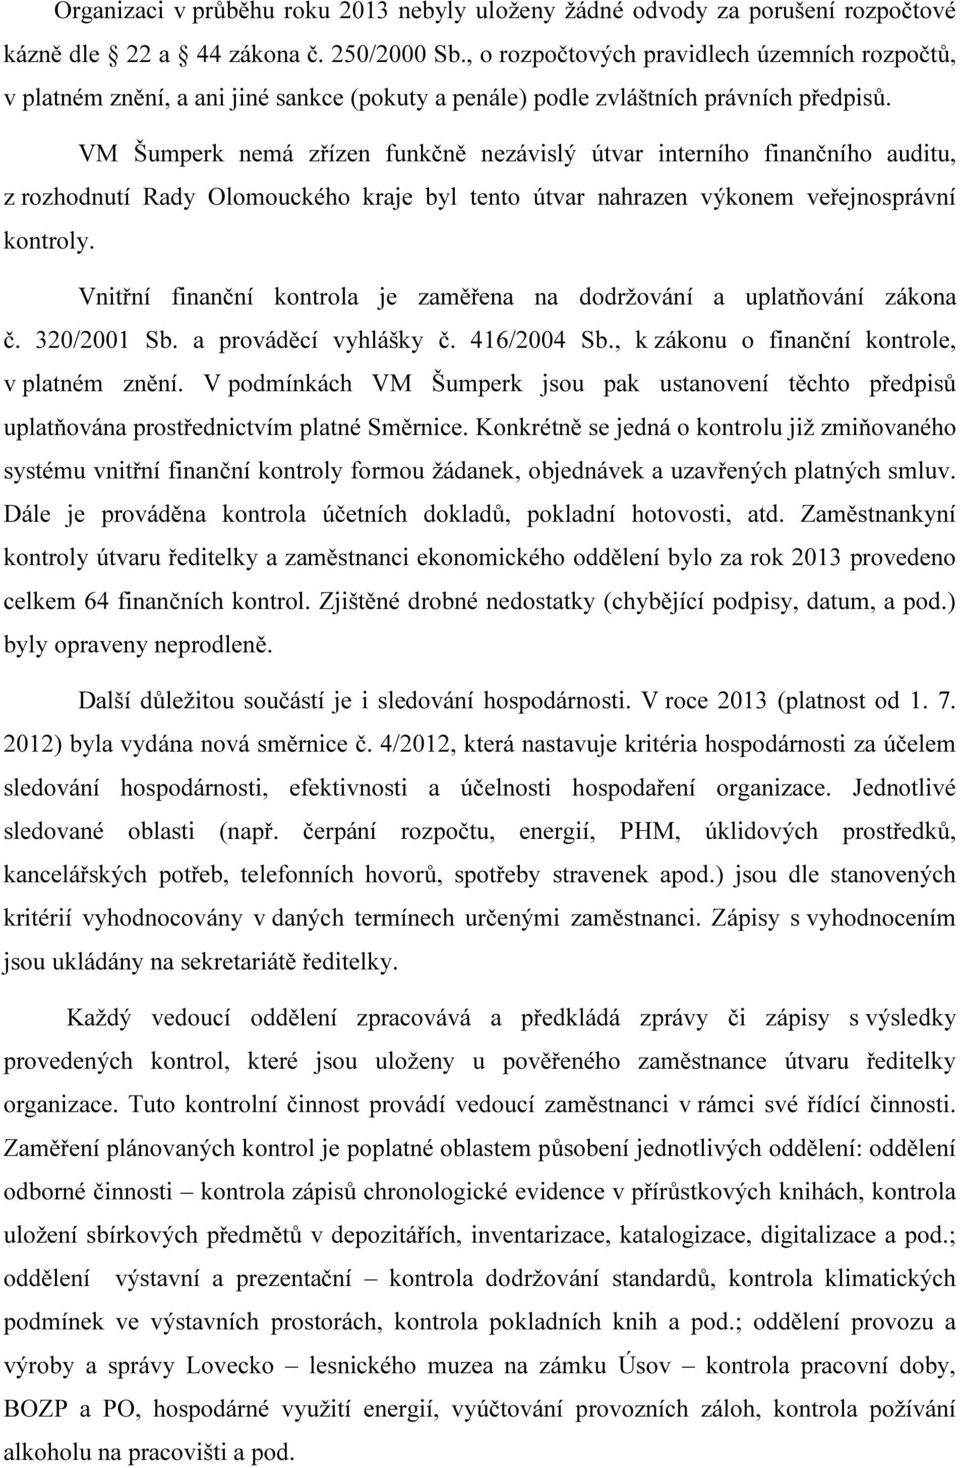 VM Šumperk nemá zřízen funkčně nezávislý útvar interního finančního auditu, z rozhodnutí Rady Olomouckého kraje byl tento útvar nahrazen výkonem veřejnosprávní kontroly.